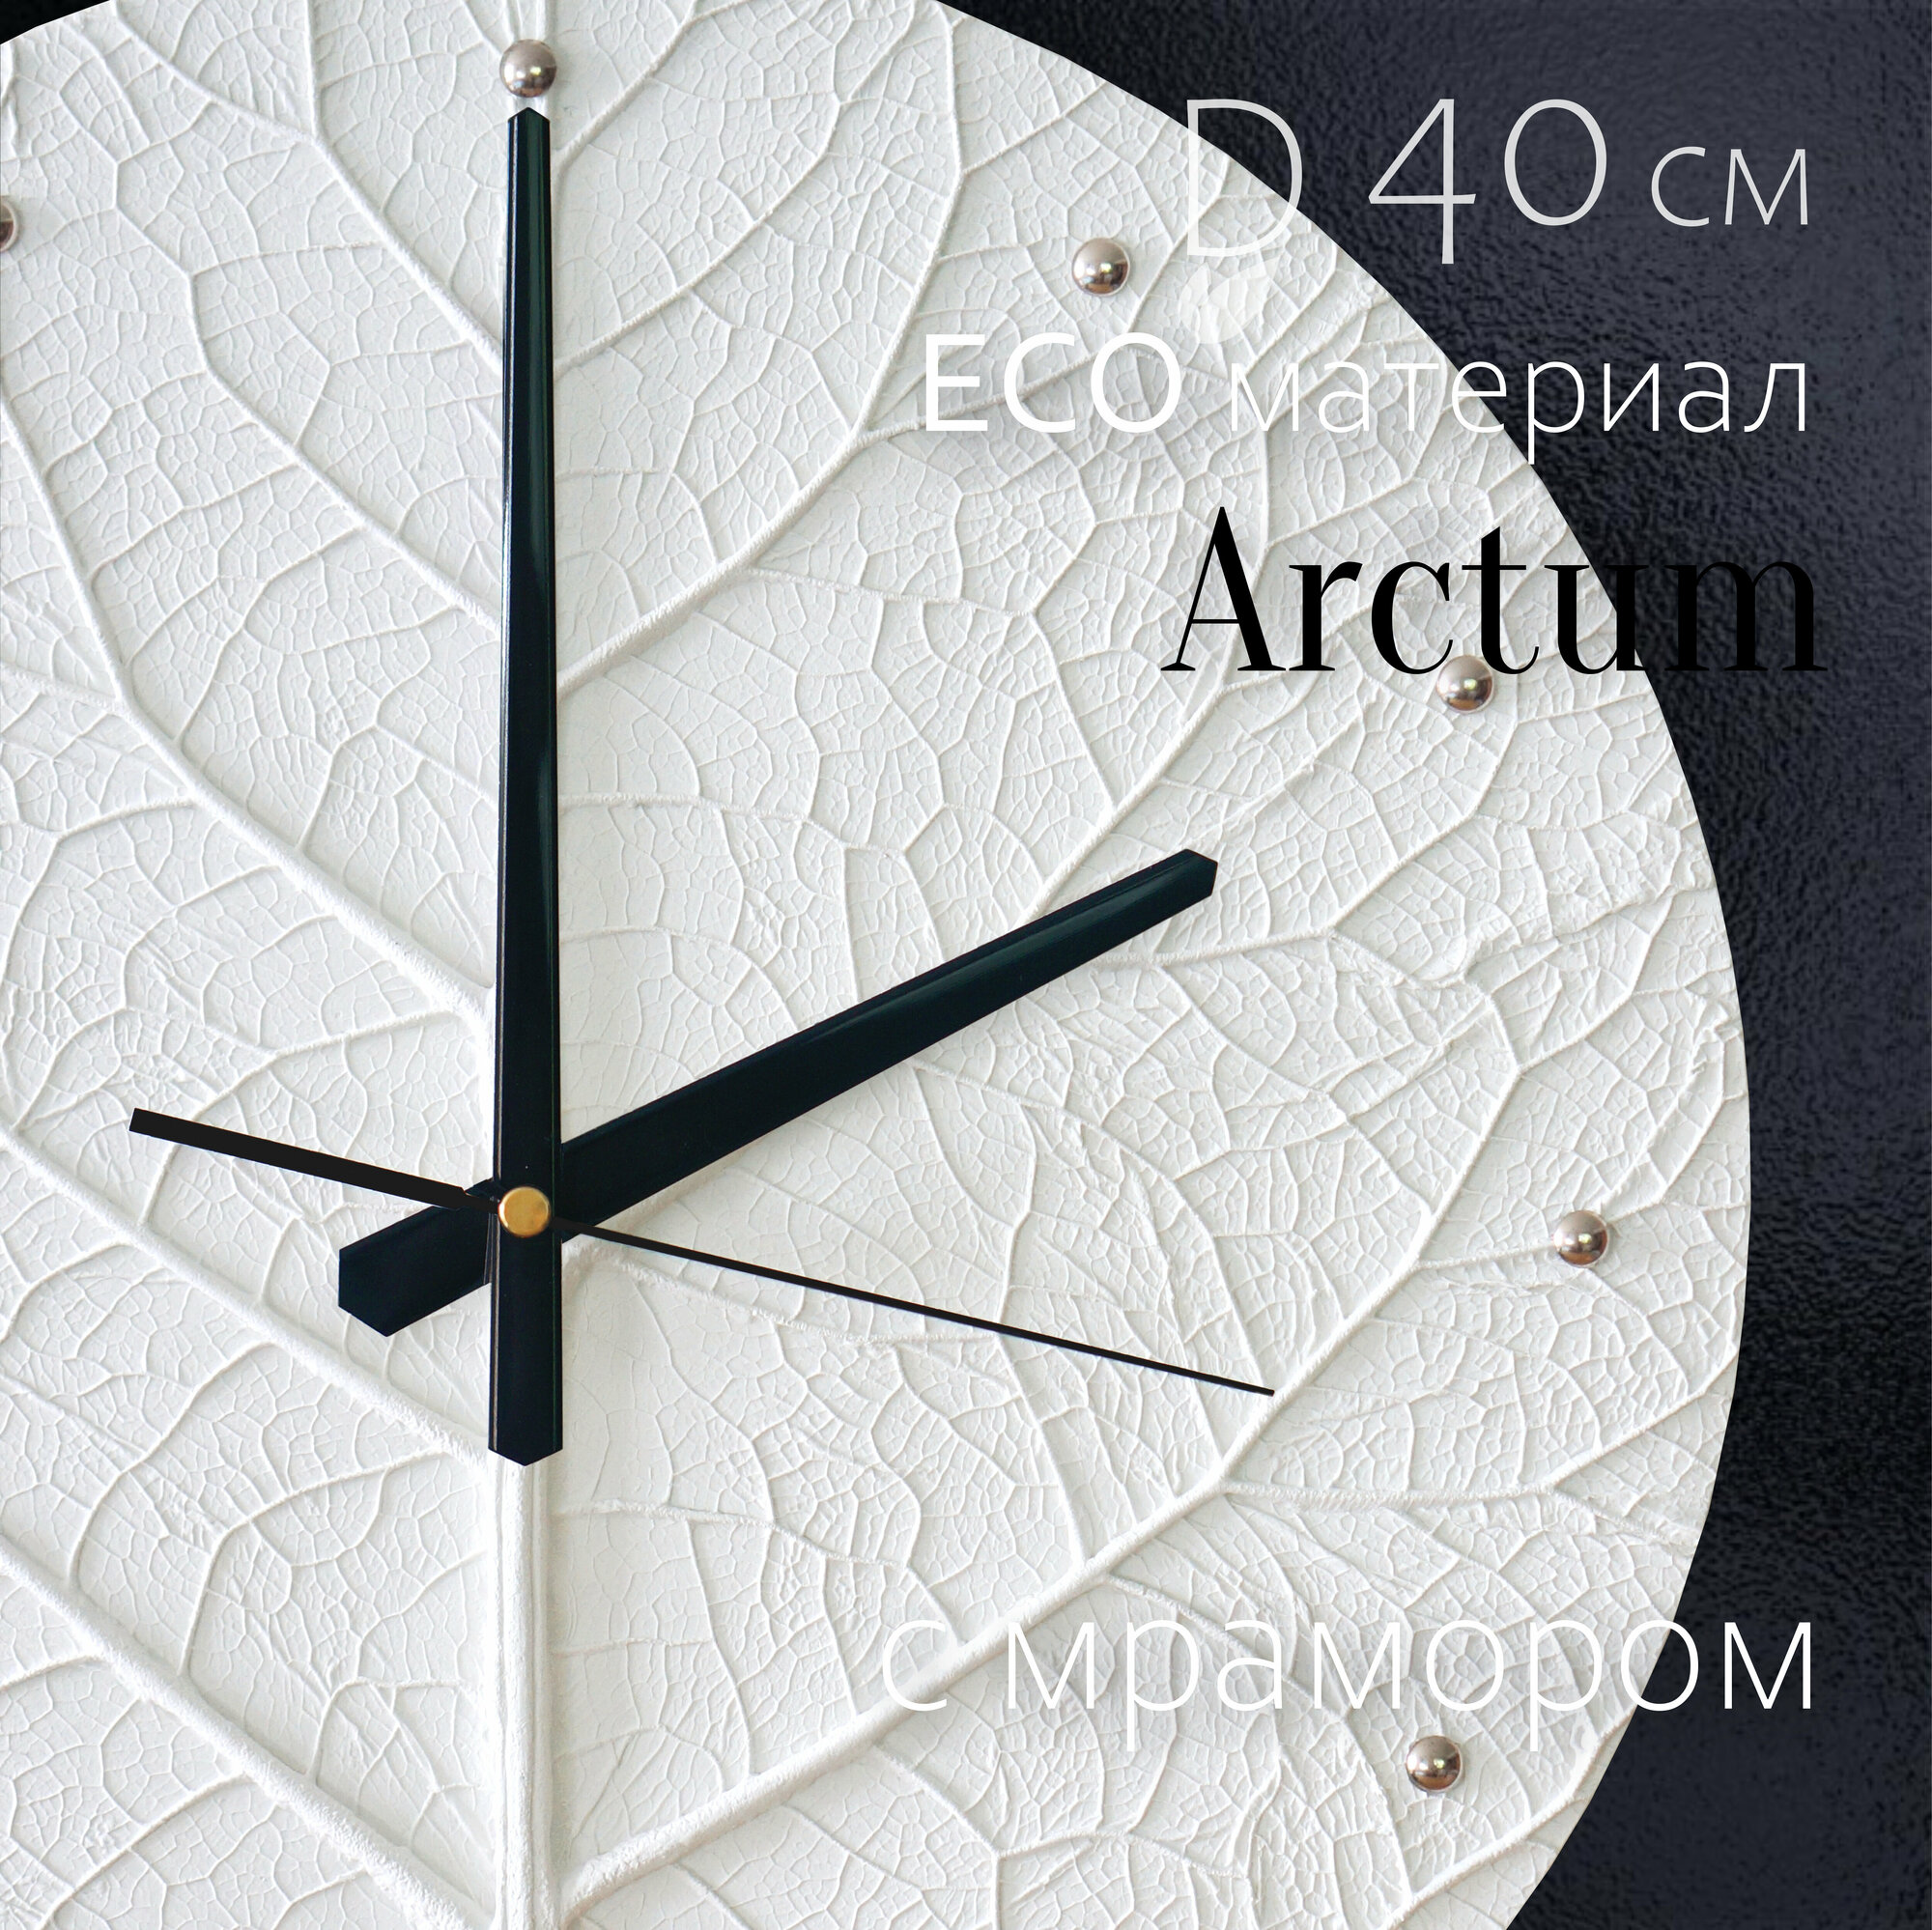 Часы настенные TimelessFlora интерьерные большие бесшумные, из натуральных материалов